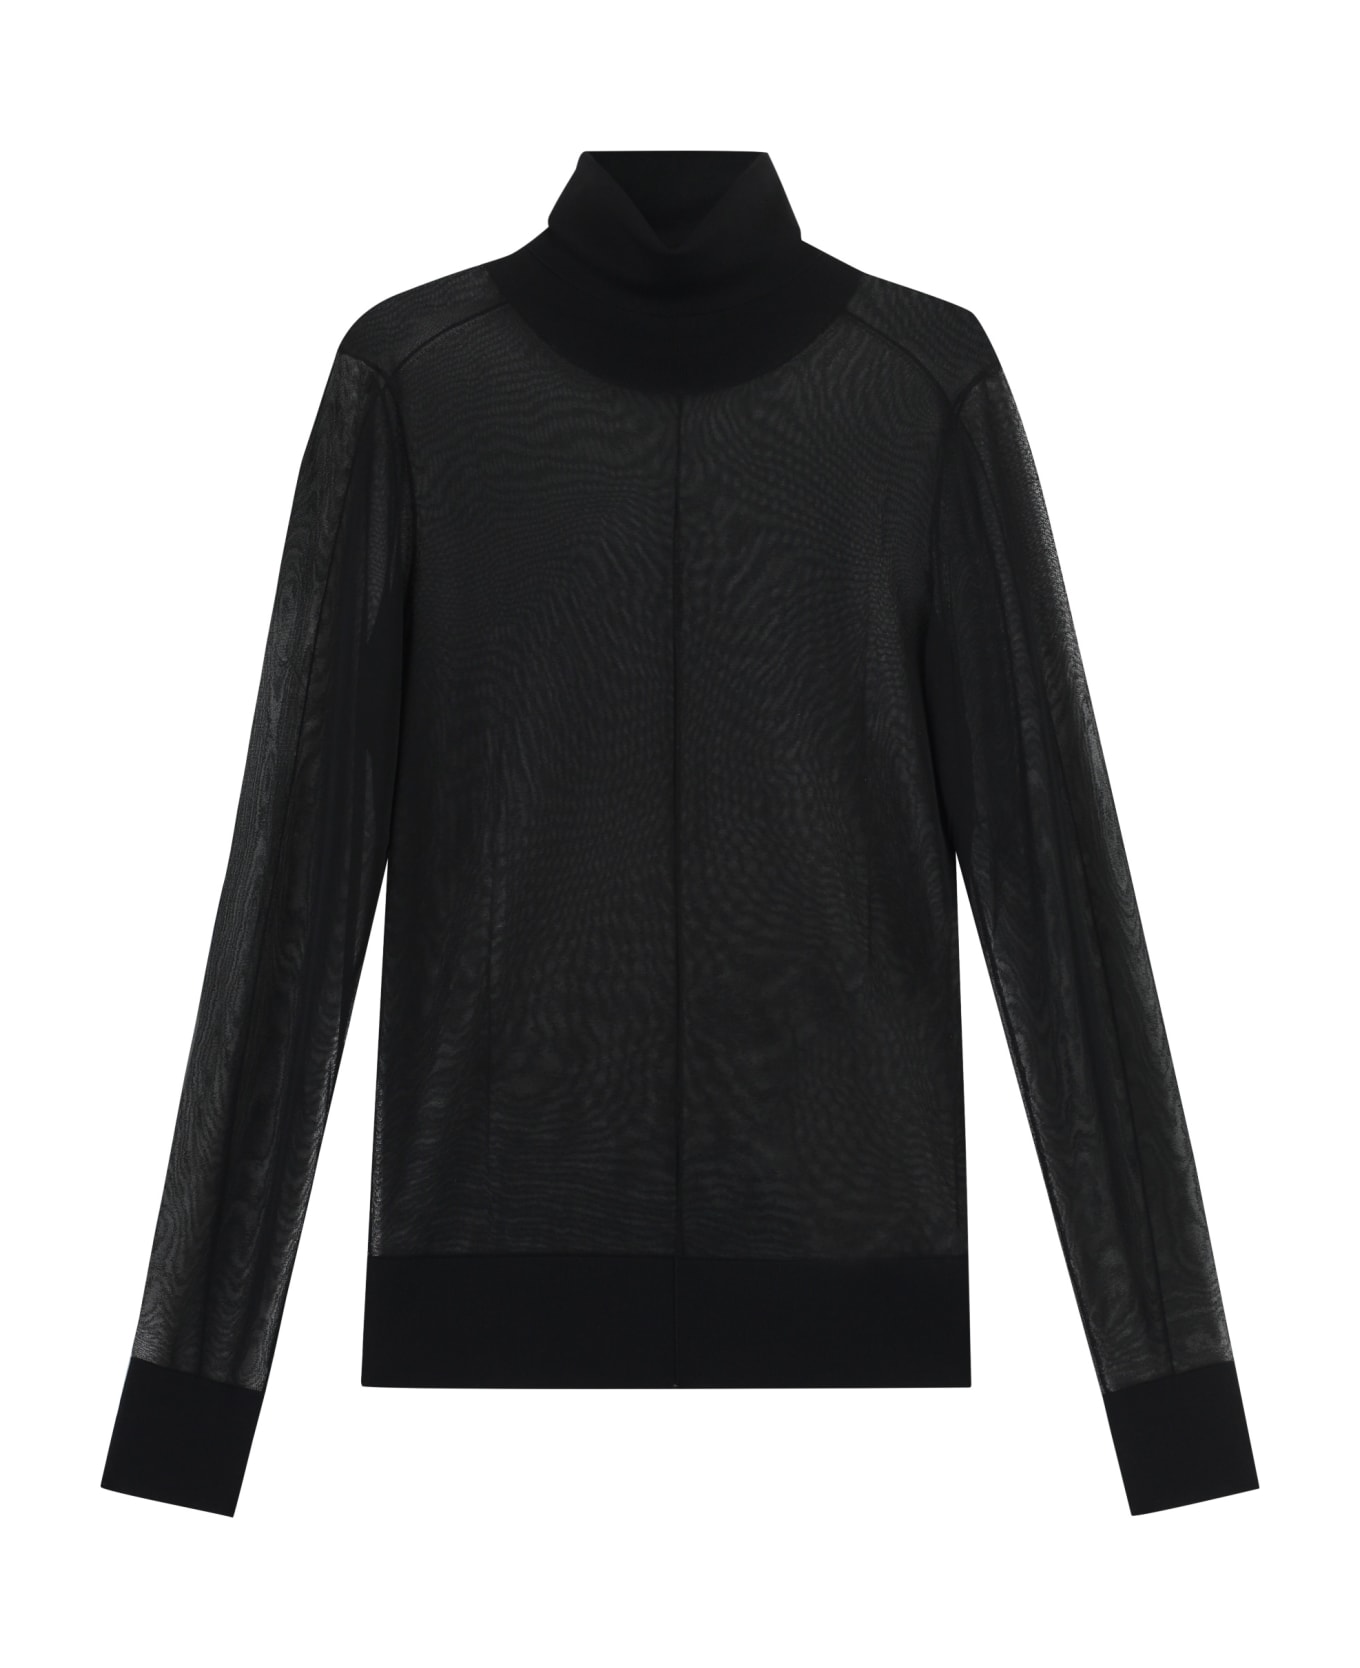 Calvin Klein Knitwork Turtleneck Sweater - black